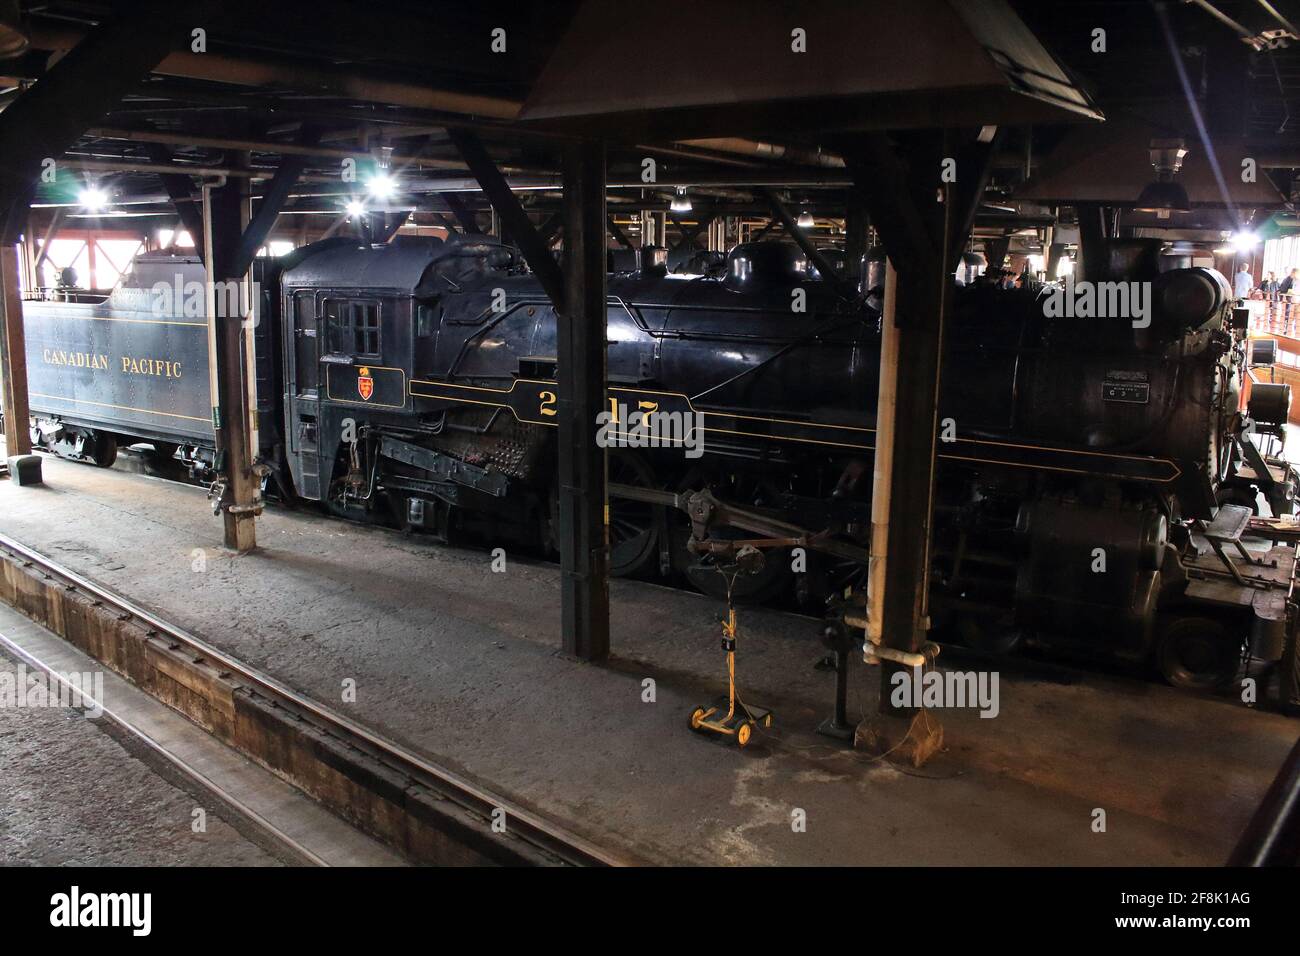 Steam train / loco in for repair. Stock Photo